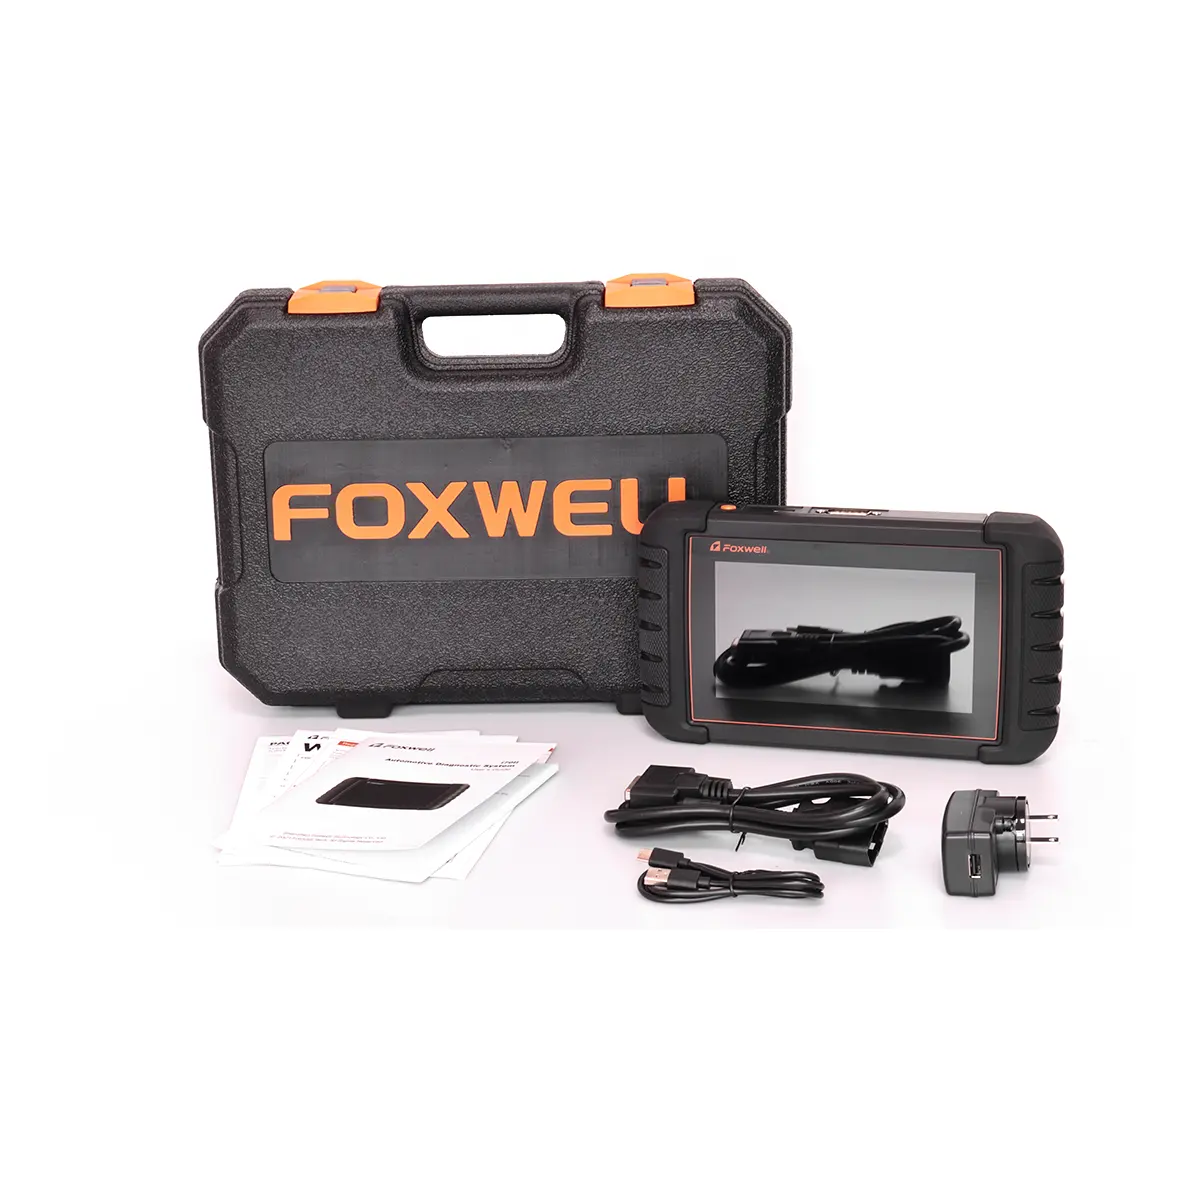 Диагностический сканер Foxwell I70II OBD2, диагностический прибор для легких грузовиков, внедорожников, минивэнов